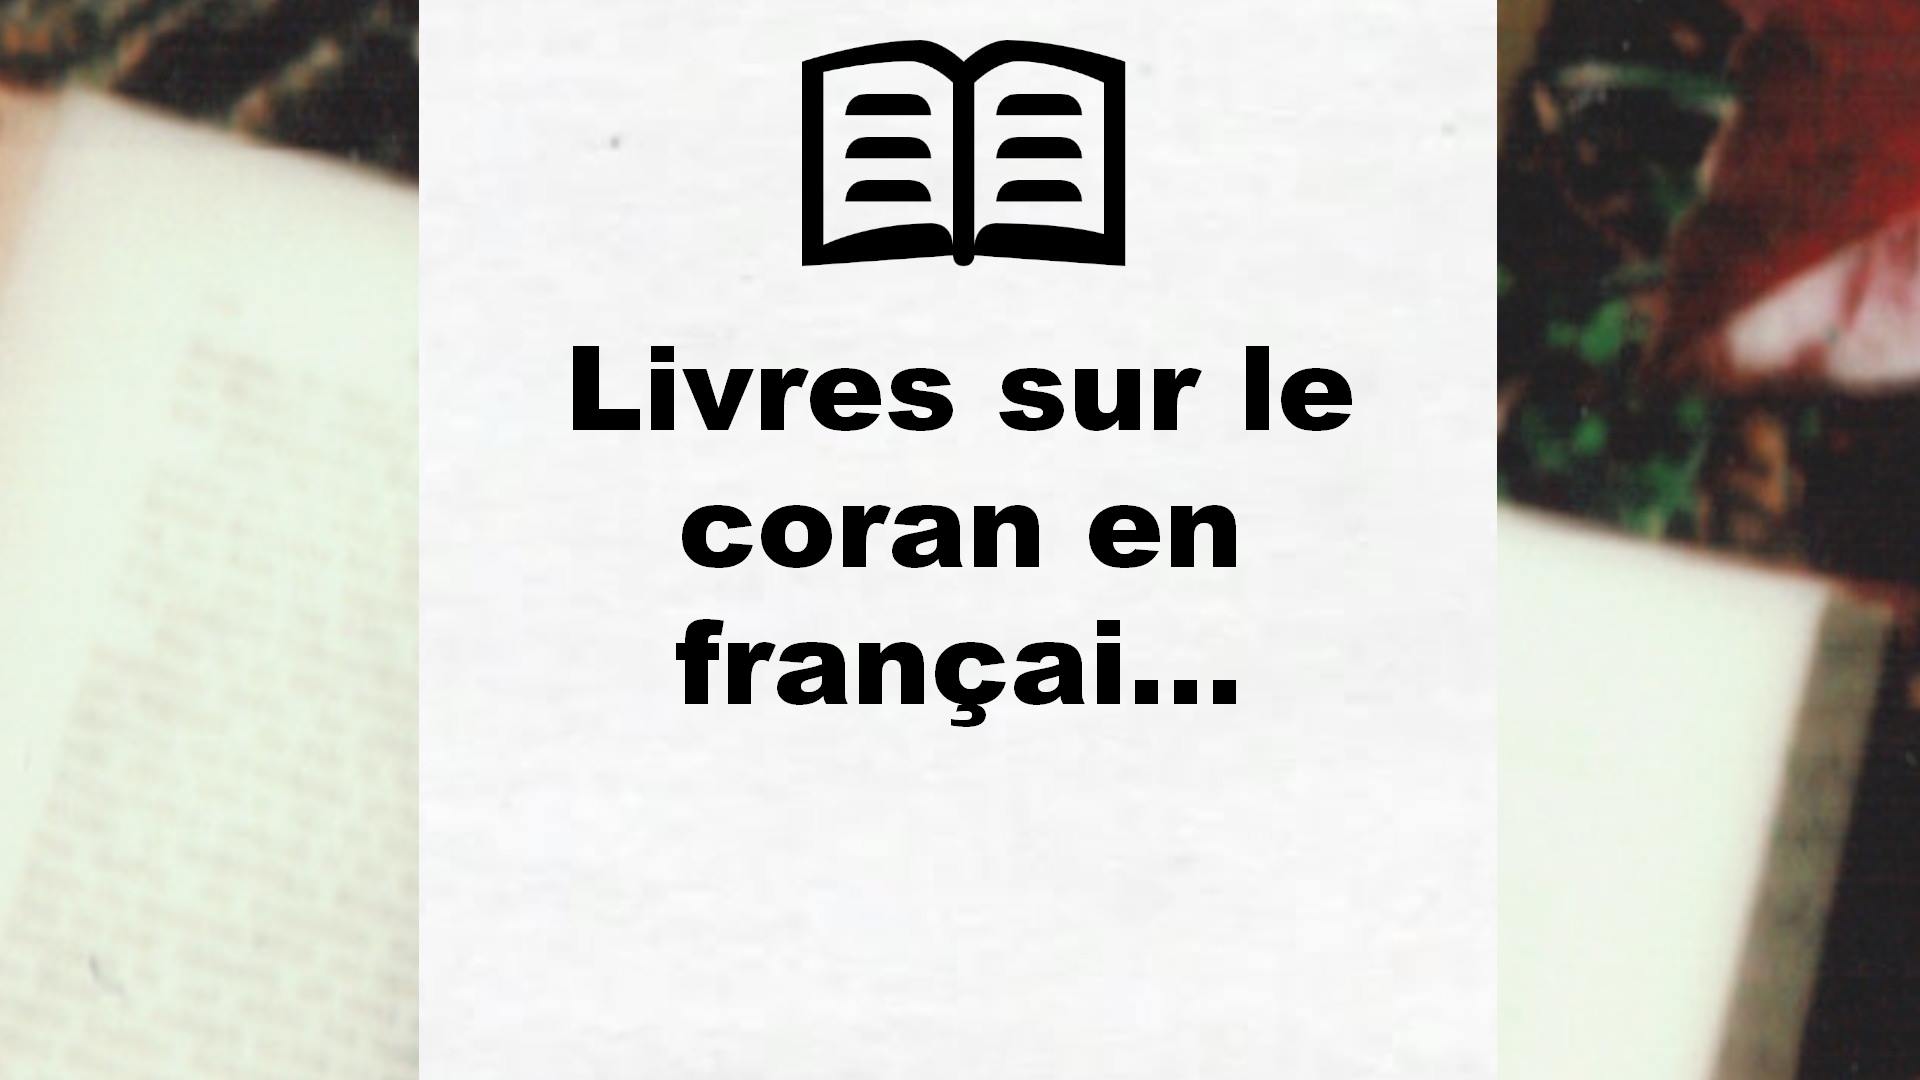 Livres sur le coran en français